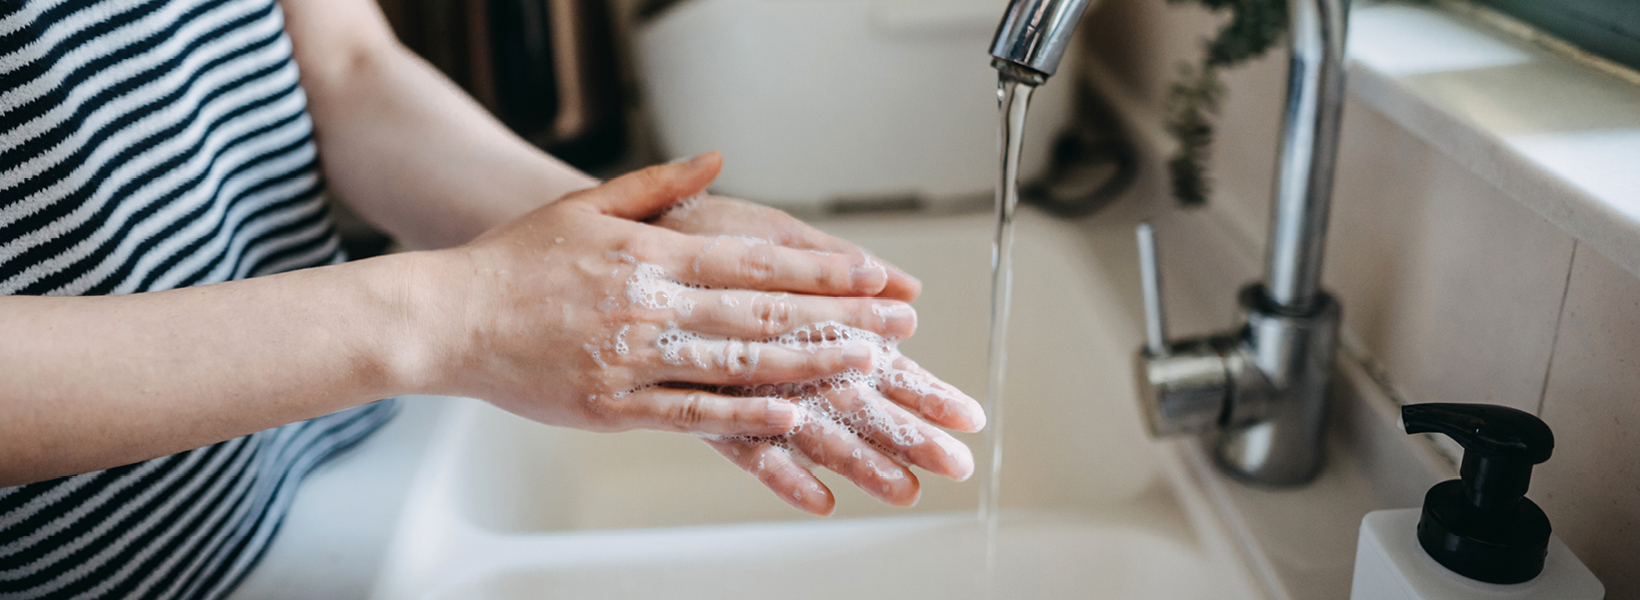 Vasker hender, god håndhygene